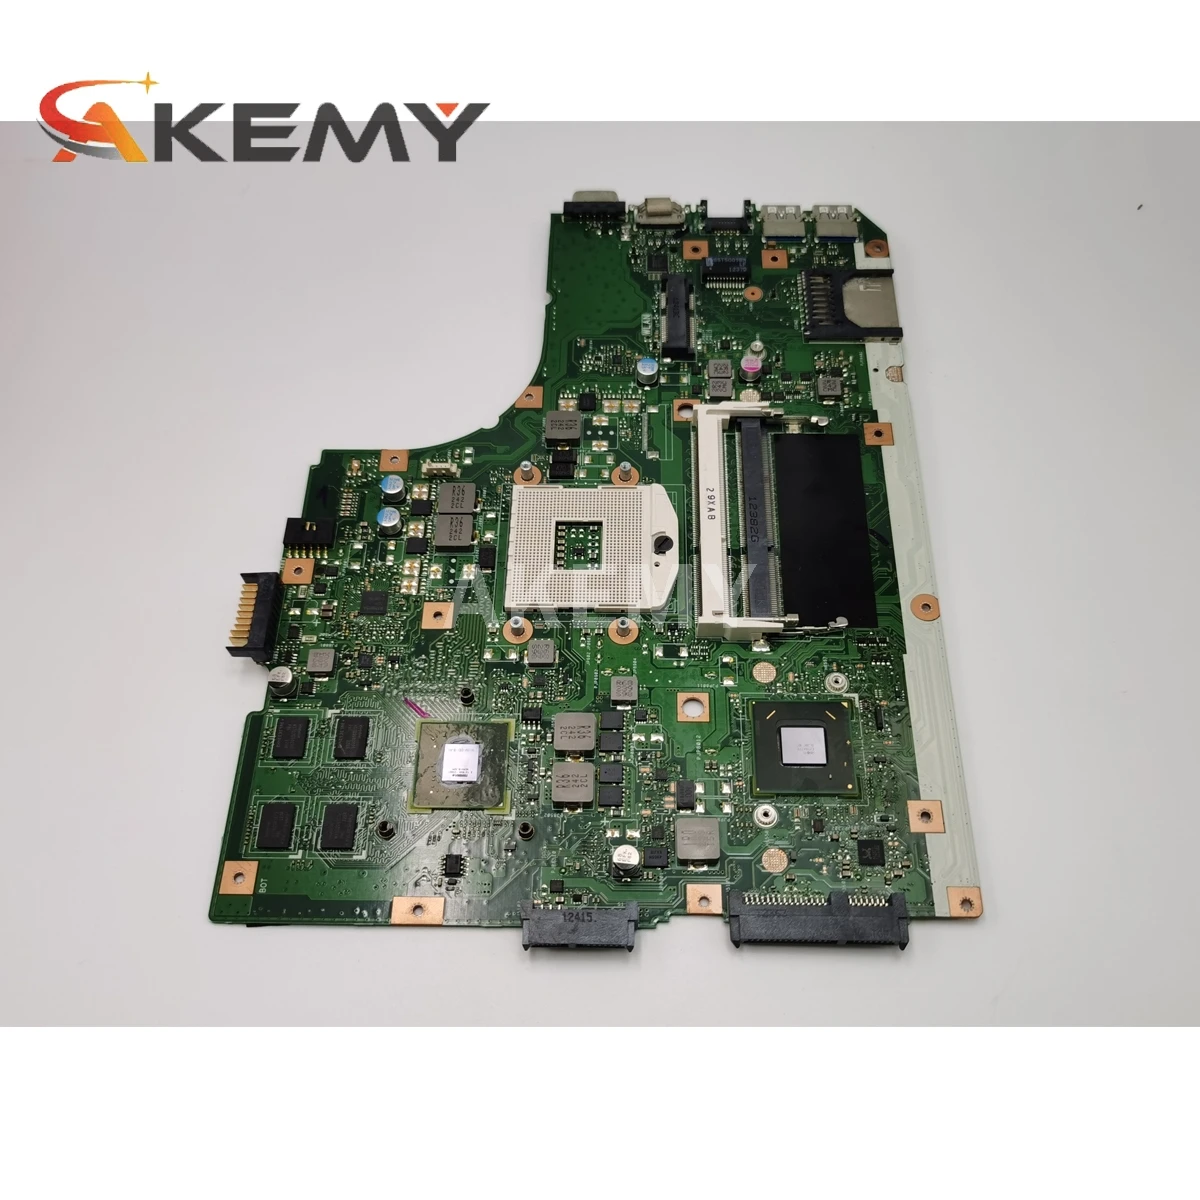 K55VD Motherboard Rev 3.1 GeForce 610M DDR3 For Asus K55VD A55VD F55VD Laptop motherboard K55VD Mainboard K55VD Motherboard